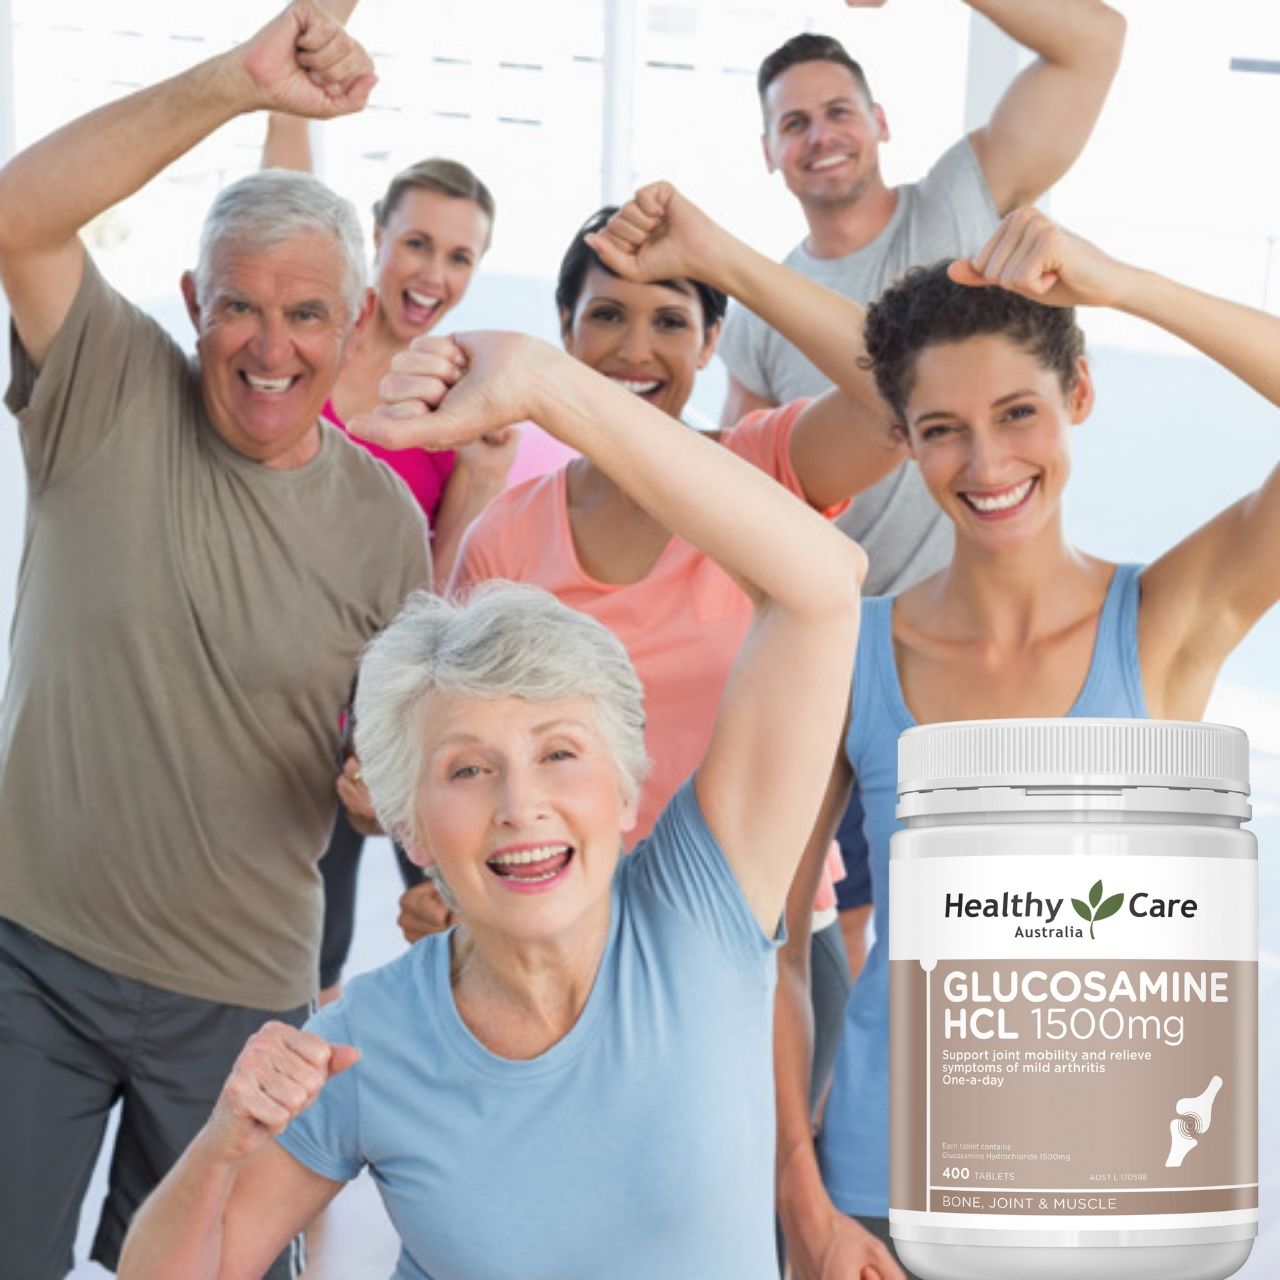 Glucosamine Úc Healthy Care HCL 1500mg Hỗ trợ giảm đau nhức xương khớp, tăng trưởng và hồi phục sụn, sản xuất chất nhầy cho khớp 400V - OZ Slim Store